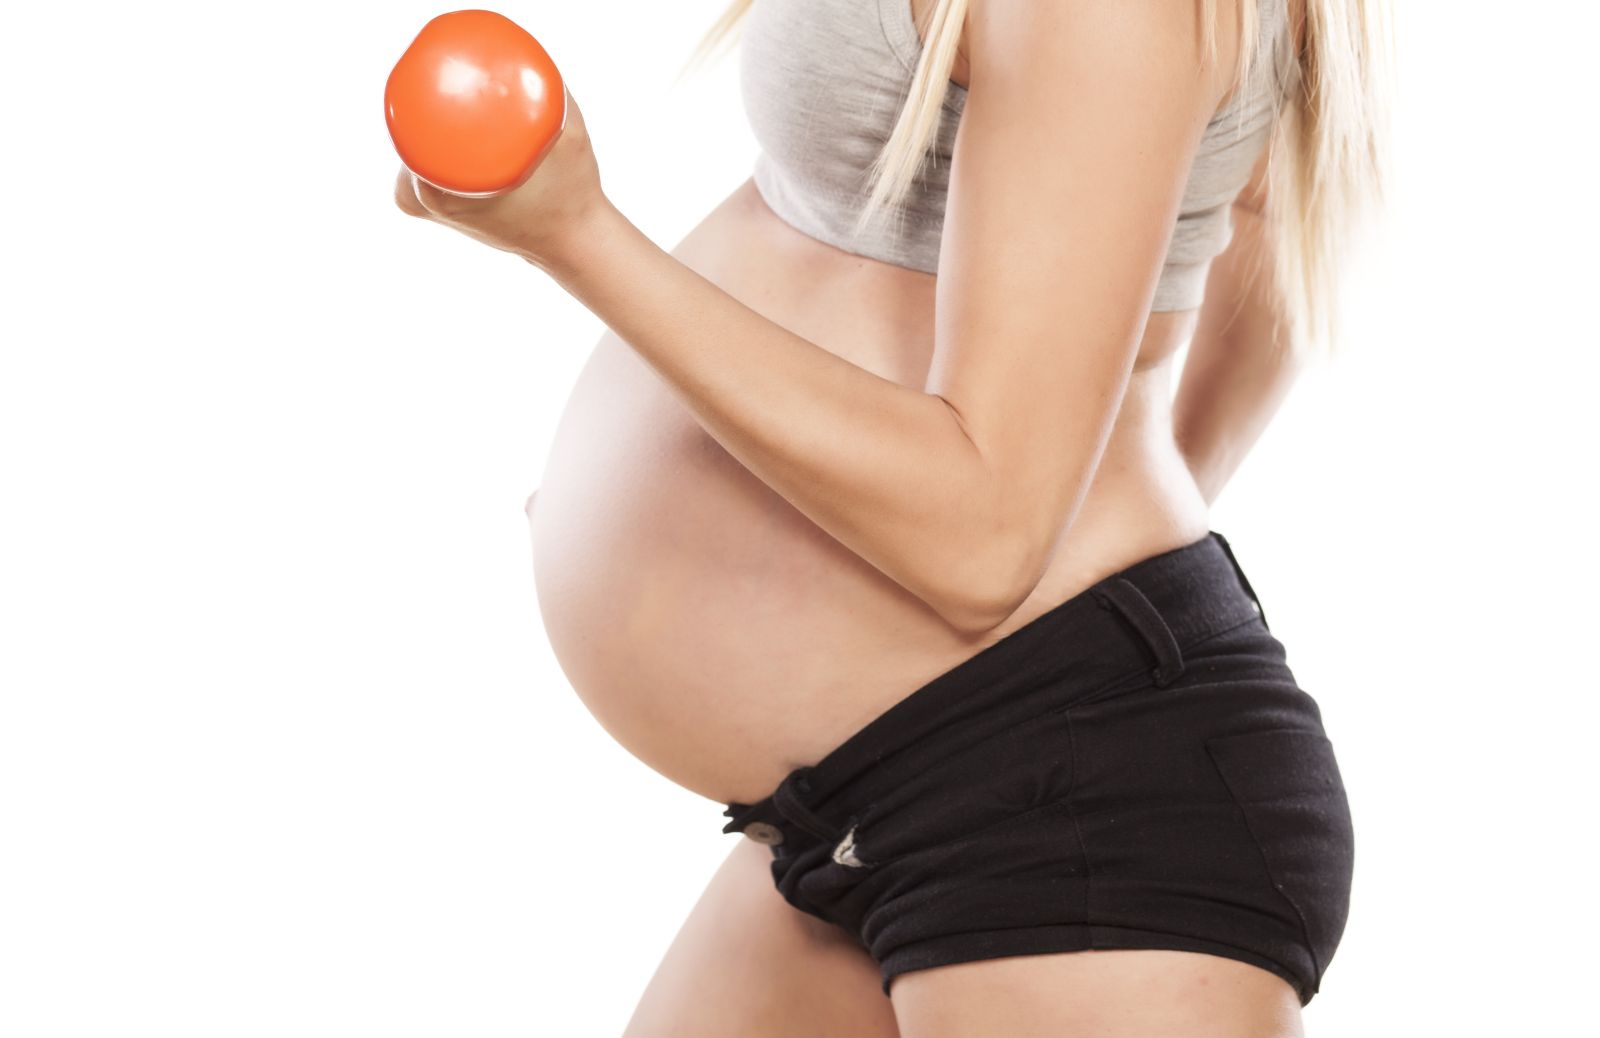 Come fare sport in gravidanza: in acqua - parte 2